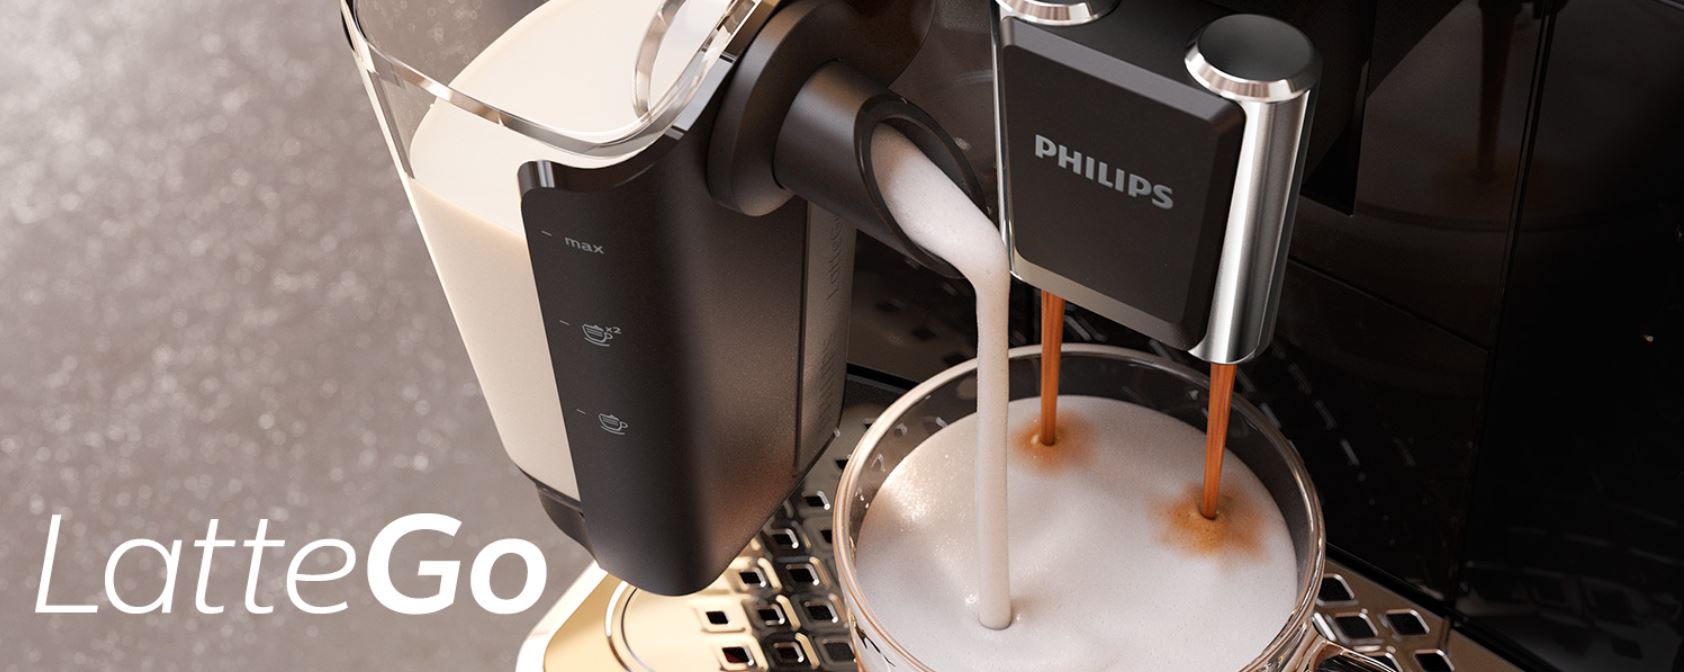 Jaki ekspres ciśnieniowy wybrać - Najlepsze modele za 1000 zł, 2000 zł i 3000 zł - Philips Latte Go - system spieniania mleka